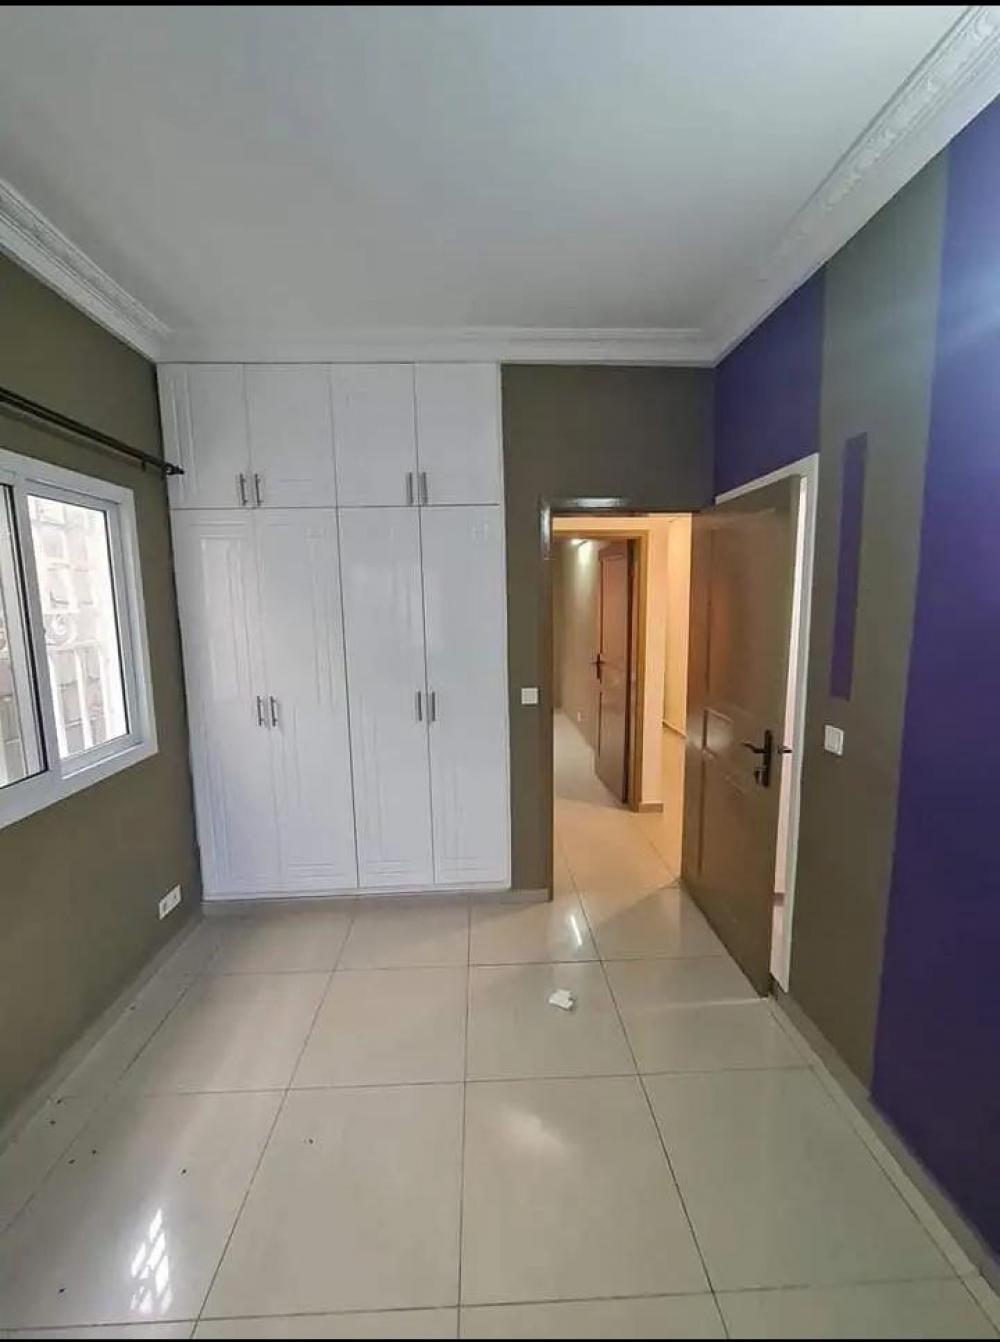 Appartement 3 chambres à louer à Libreville, Angondjé. Prix: 500 000 FcfaPhoto Annonce Gabonhome 0